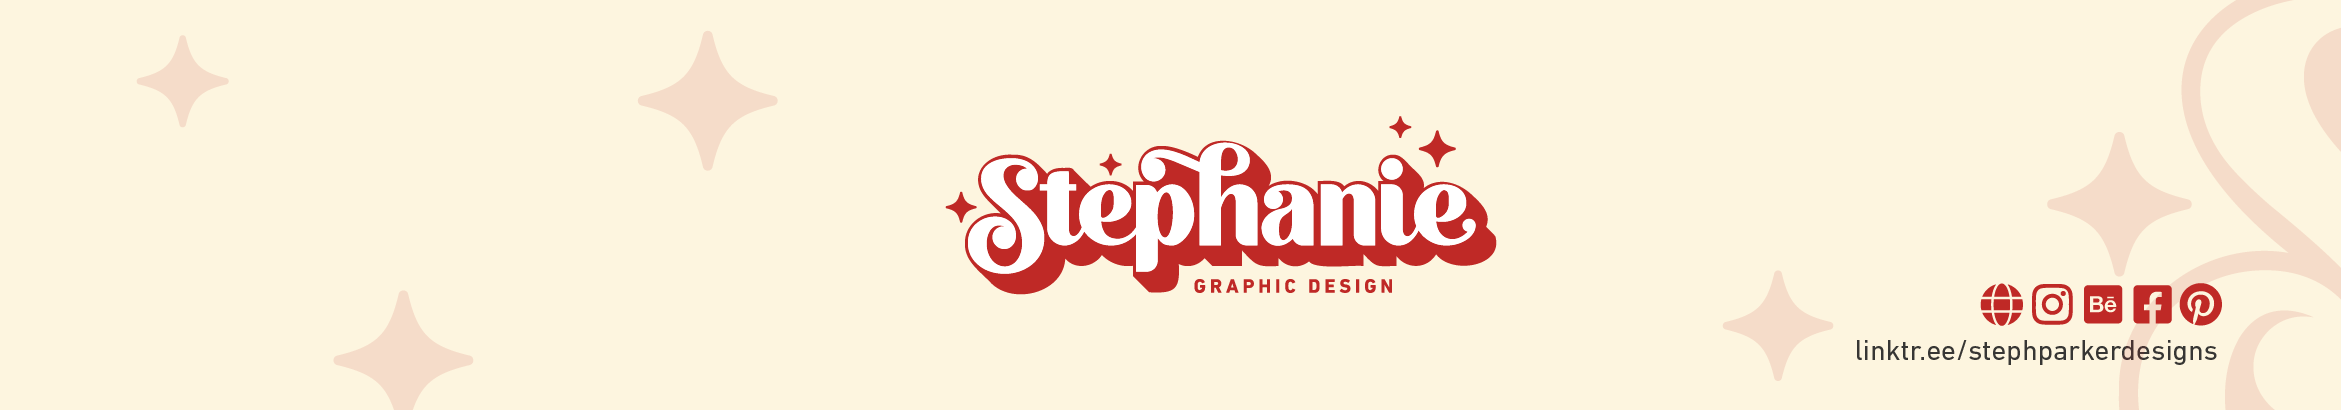 Banner de perfil de Stephanie Parker